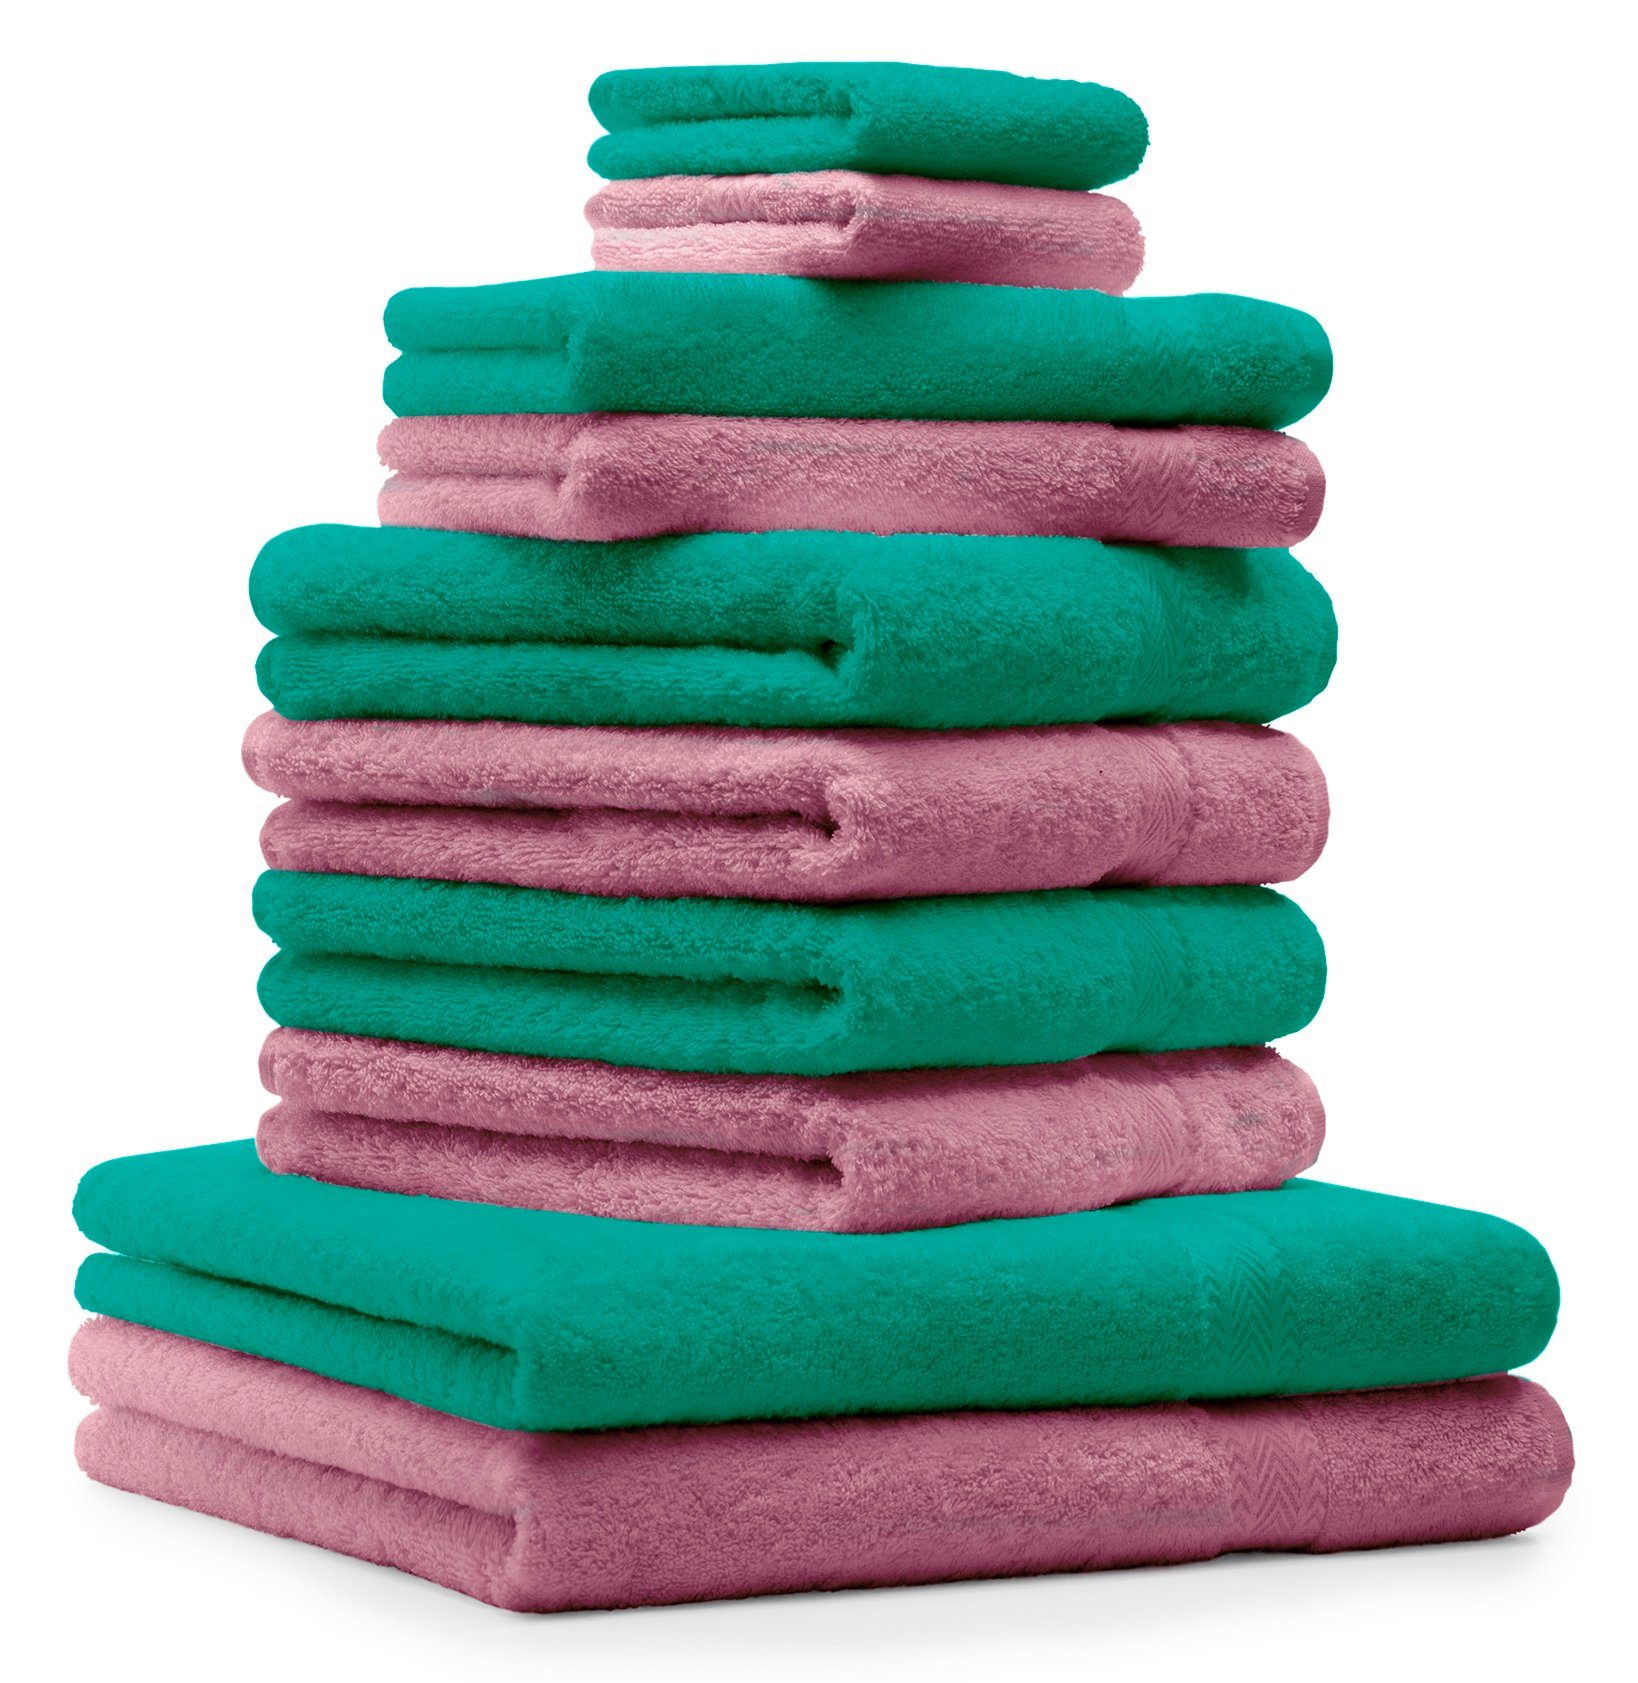 & 2 Premium Set 2 Baumwolle 100% Waschhandschuhe Altrosa, 100% Betz Handtuch-Set Gästetücher Smaragd Handtuch 2 Duschtücher Grün Farbe Handtücher 10-TLG. 4 Baumwolle